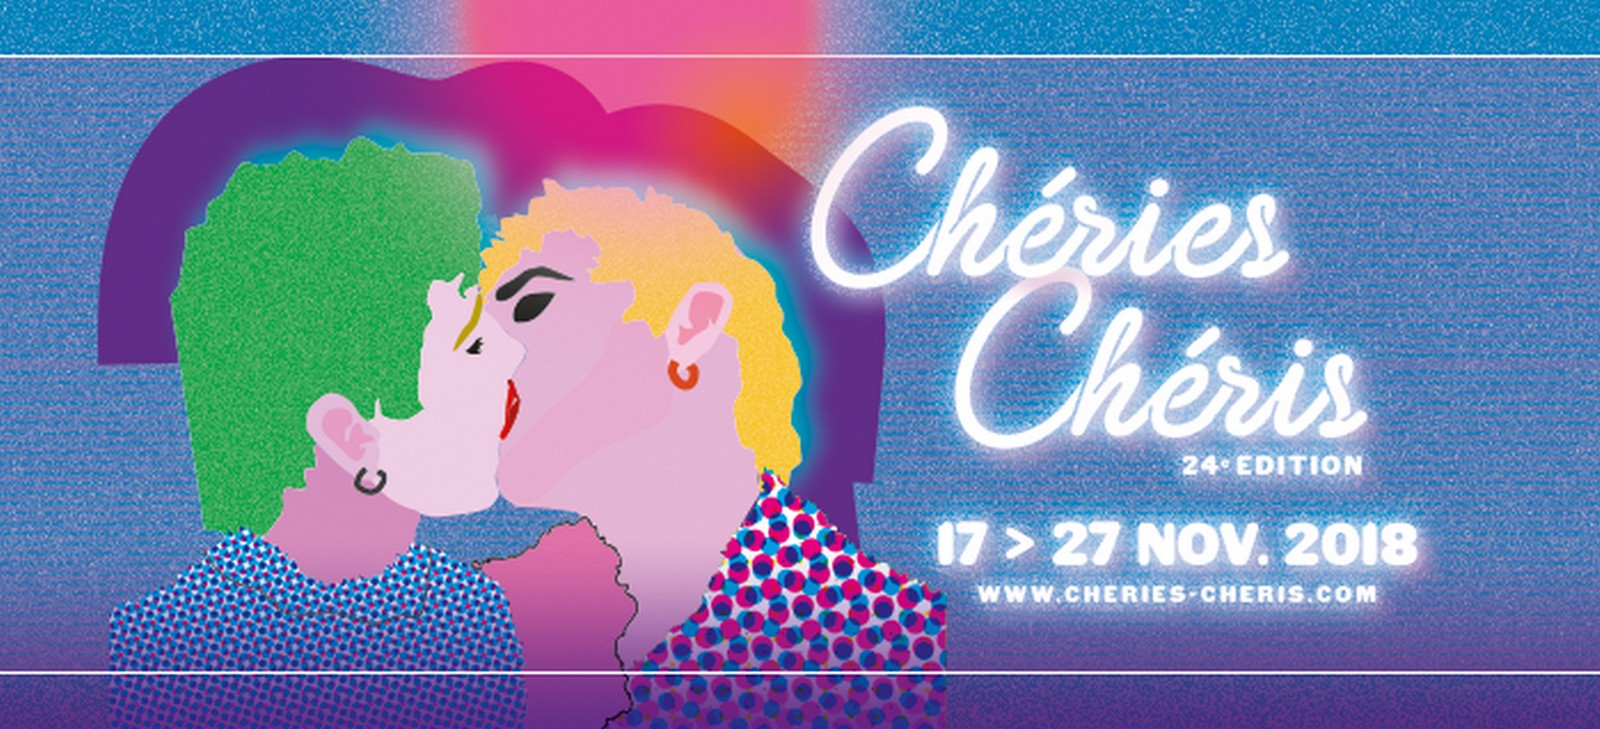 Bannière du festival Chéries Chéris 2018